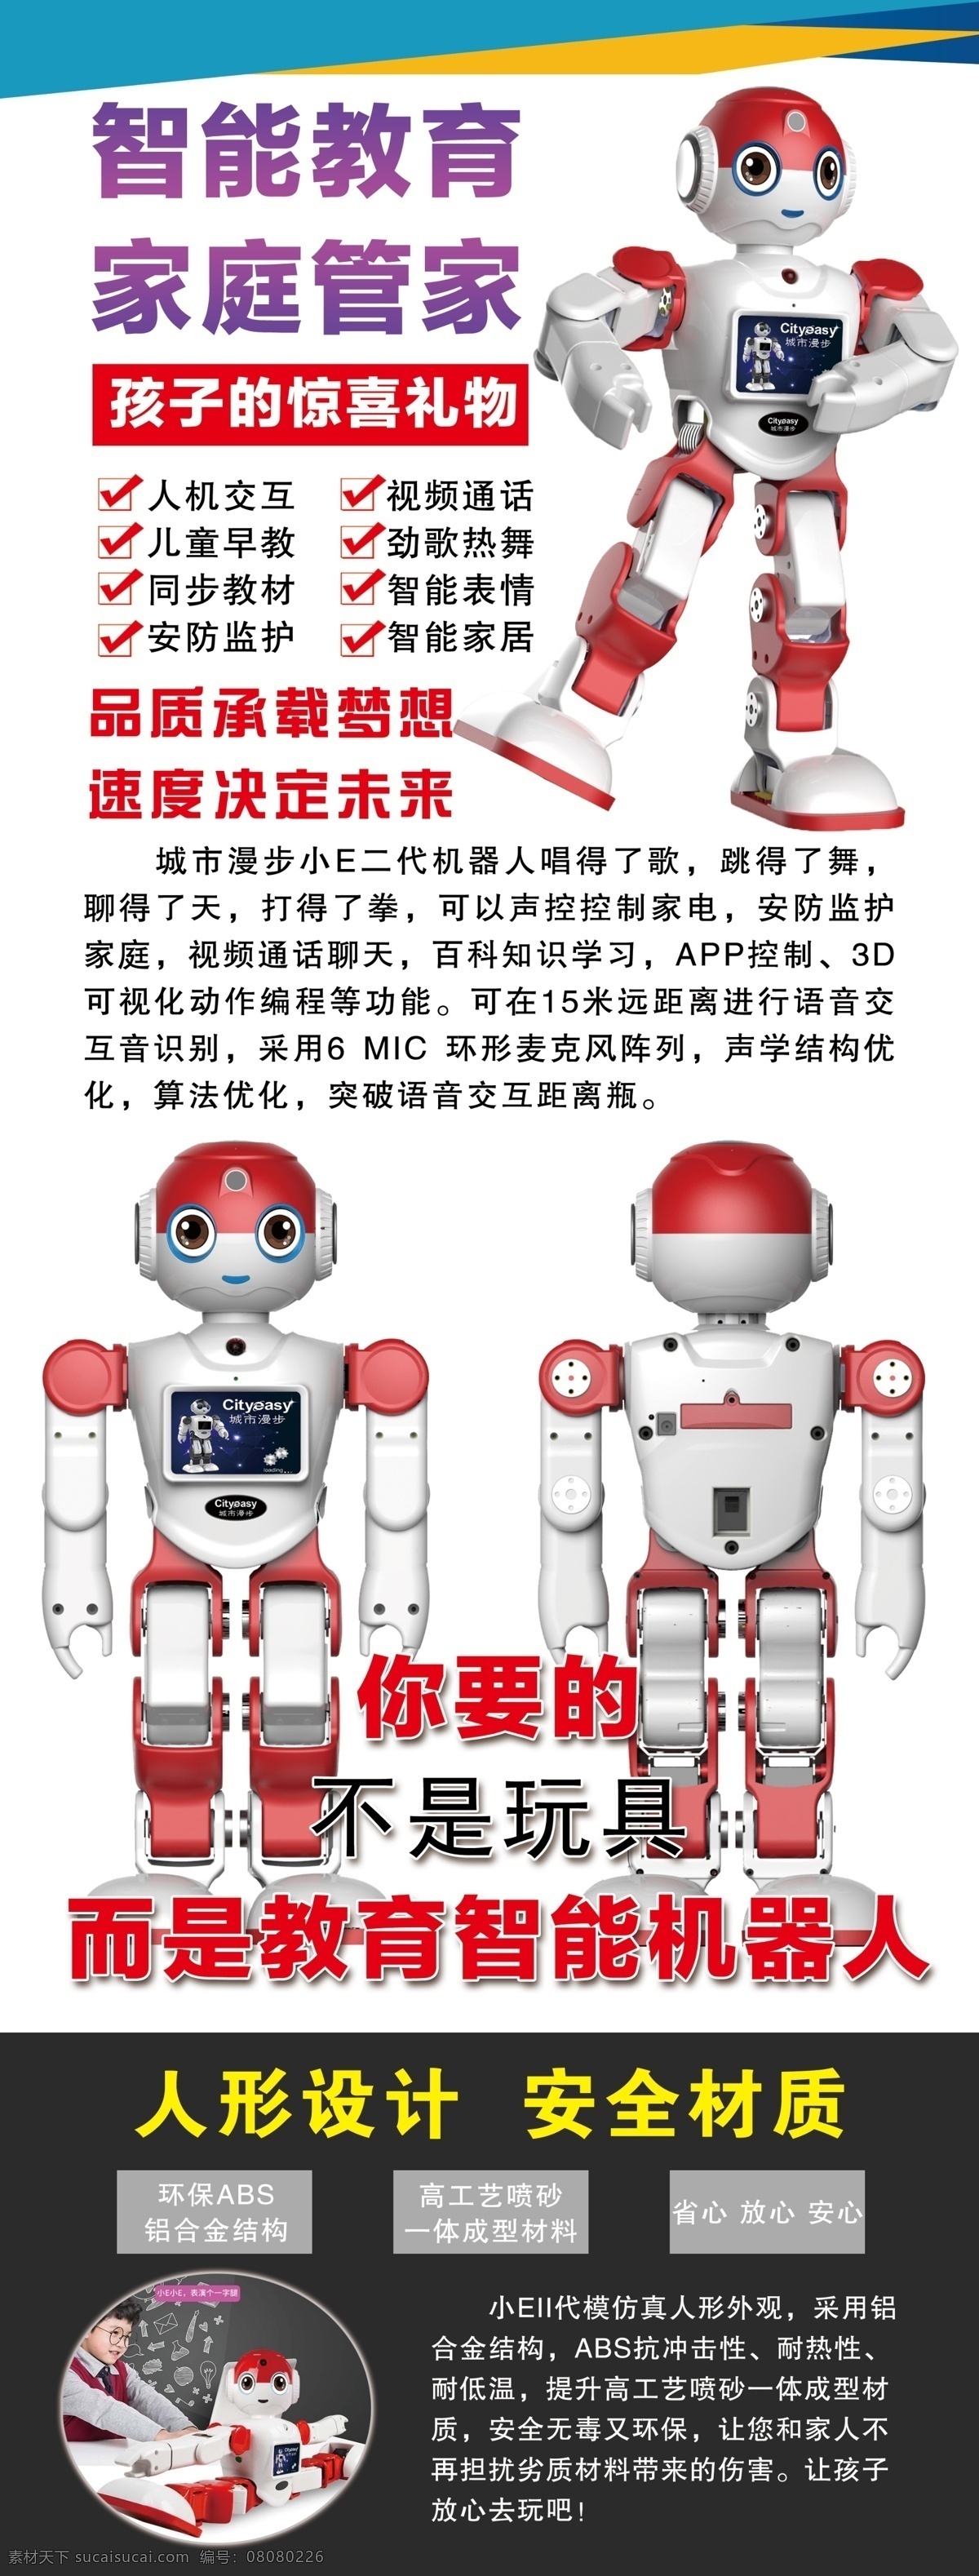 小曼 智能 机器人 教育 学 习 机器 展架 旗面